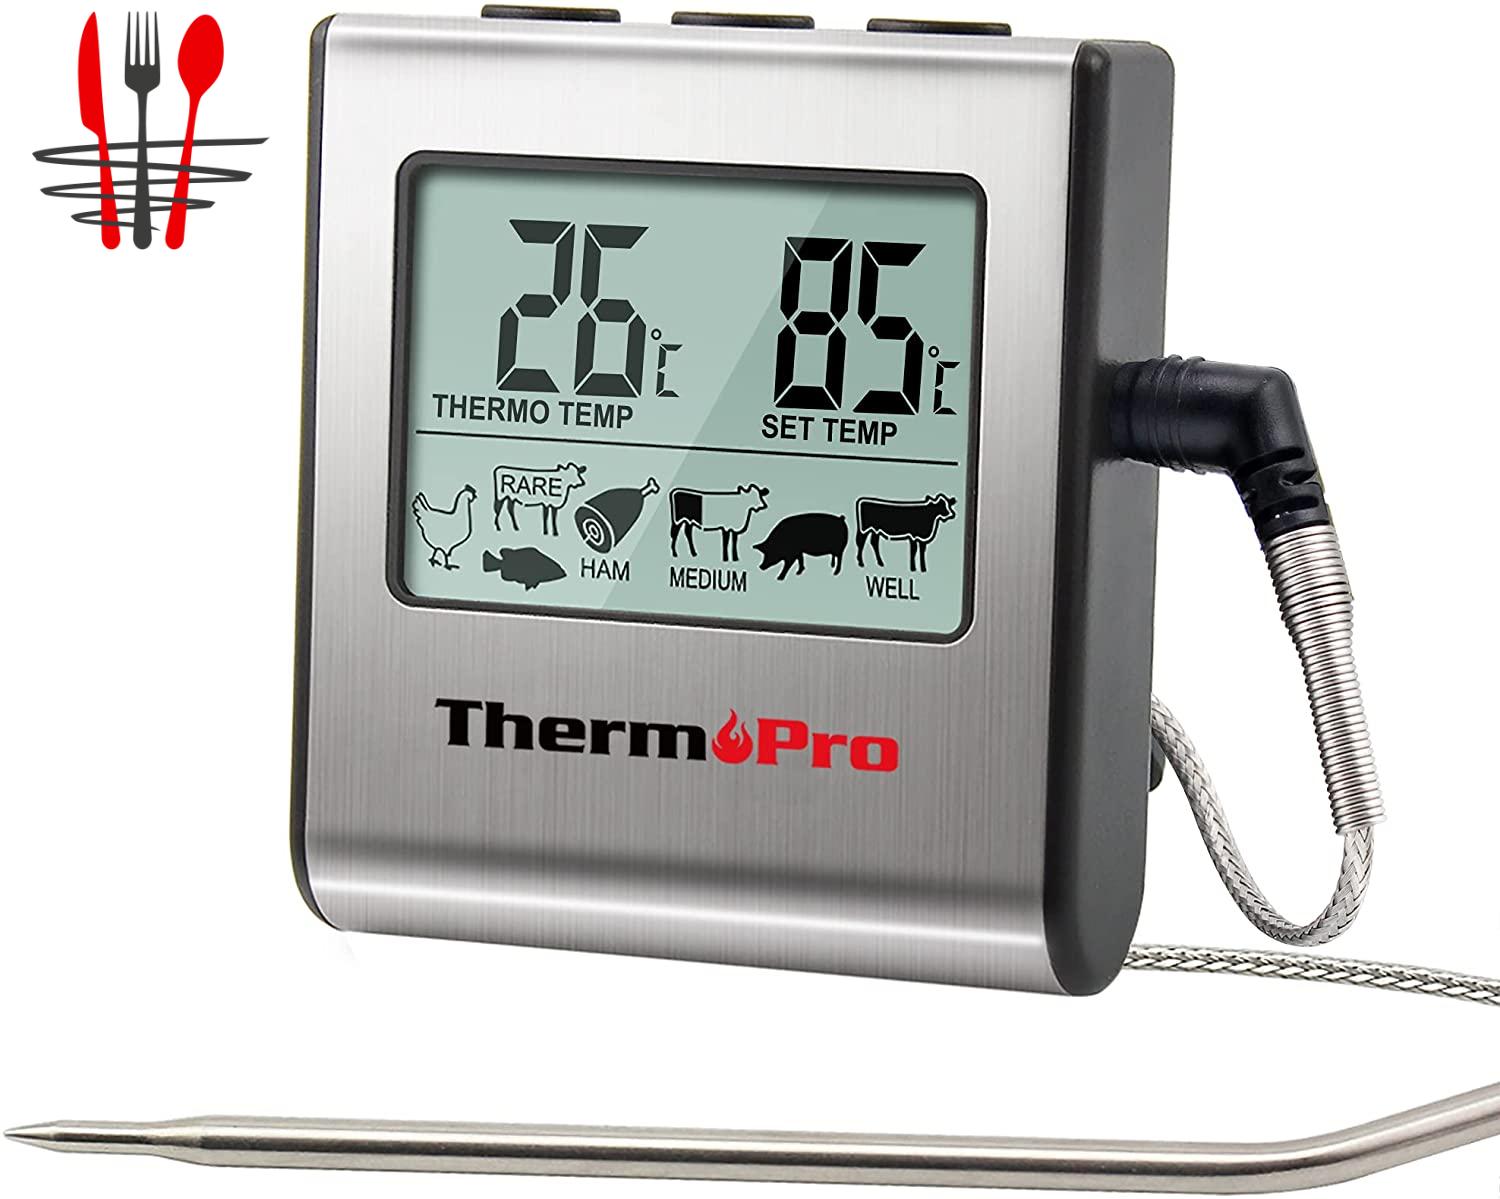 A vendre Thermometre Cuisine pour Viande